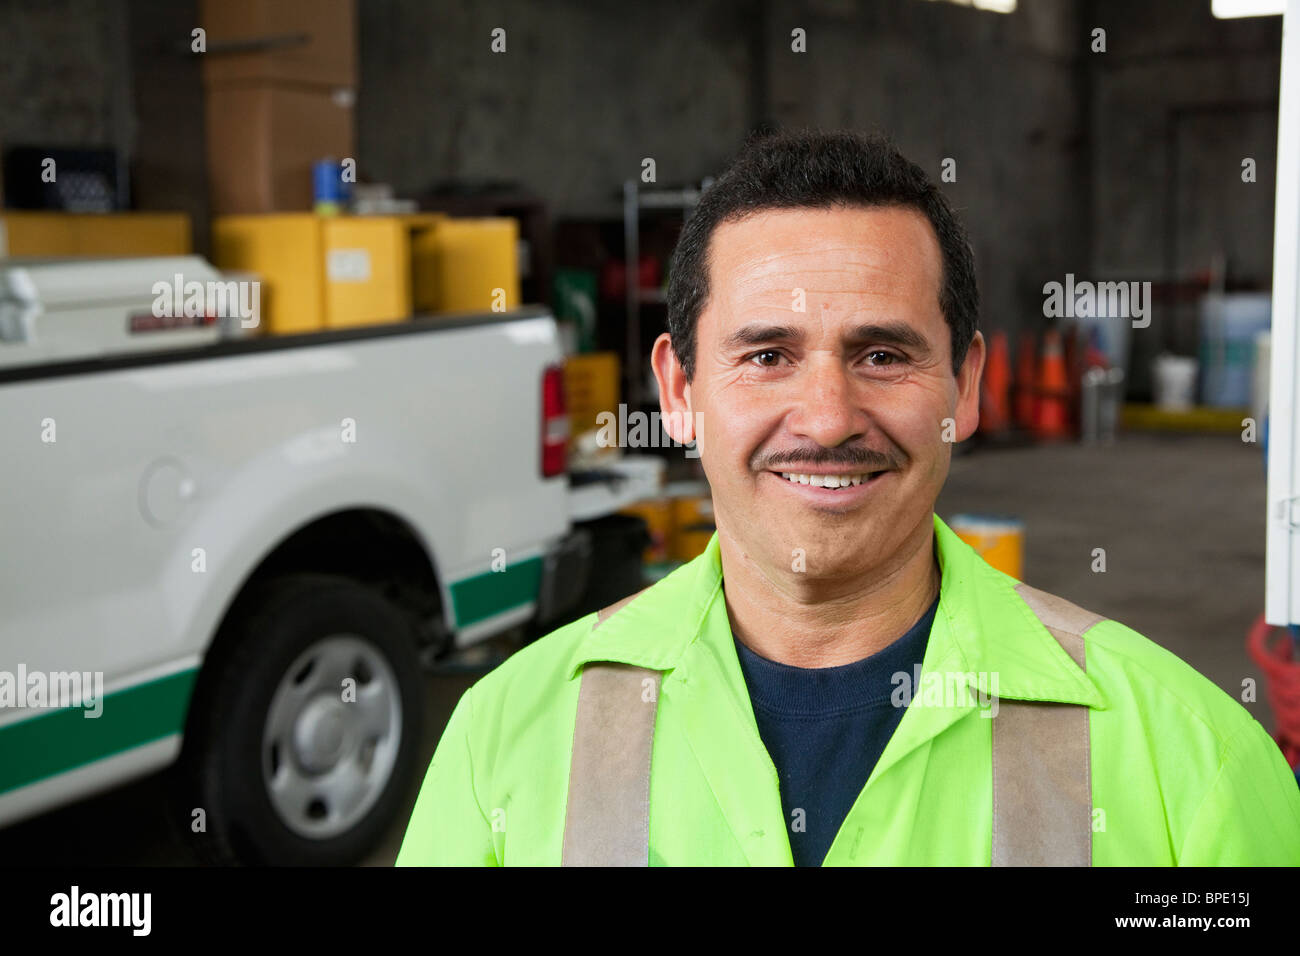 Hispanic sanitation worker smiling in garage Stock Photo